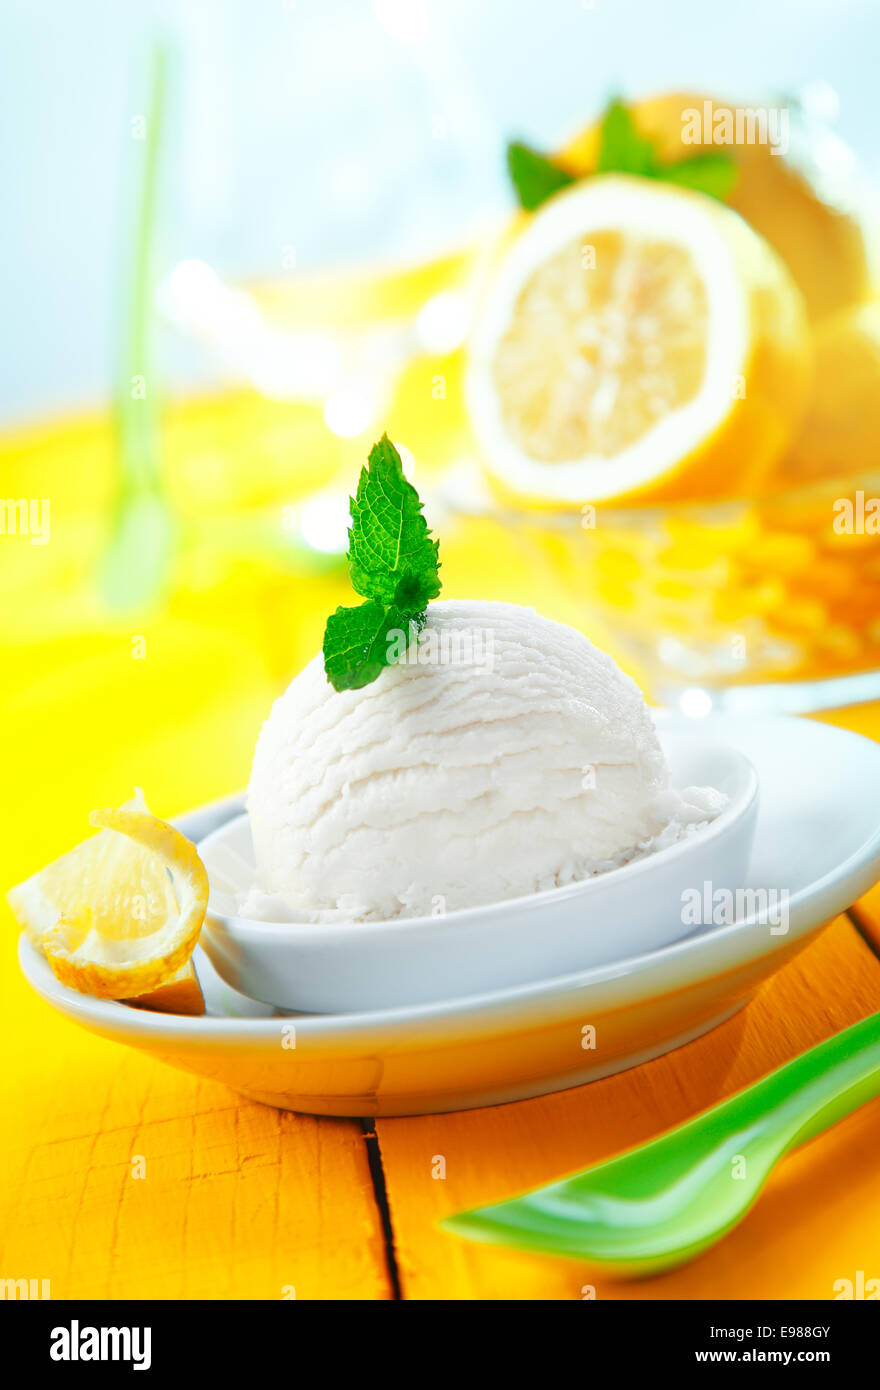 Servant de sorbet au citron aigre rafraîchissant icecream avec feuilles de menthe servi sur une table jaune inclinée Banque D'Images